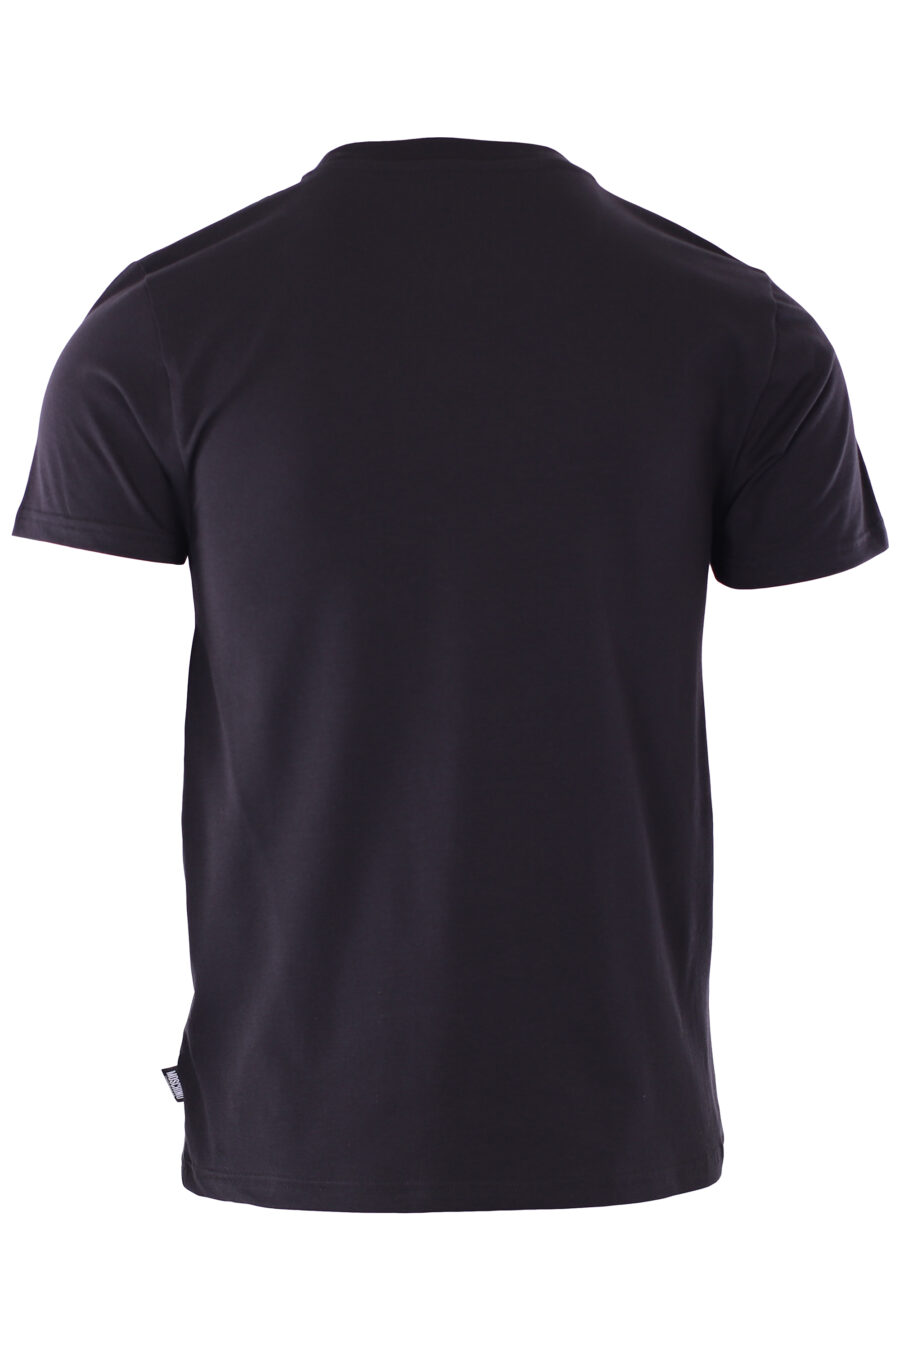 T-shirt preta de corte justo com minilogo de urso "underbear" - IMG 6589